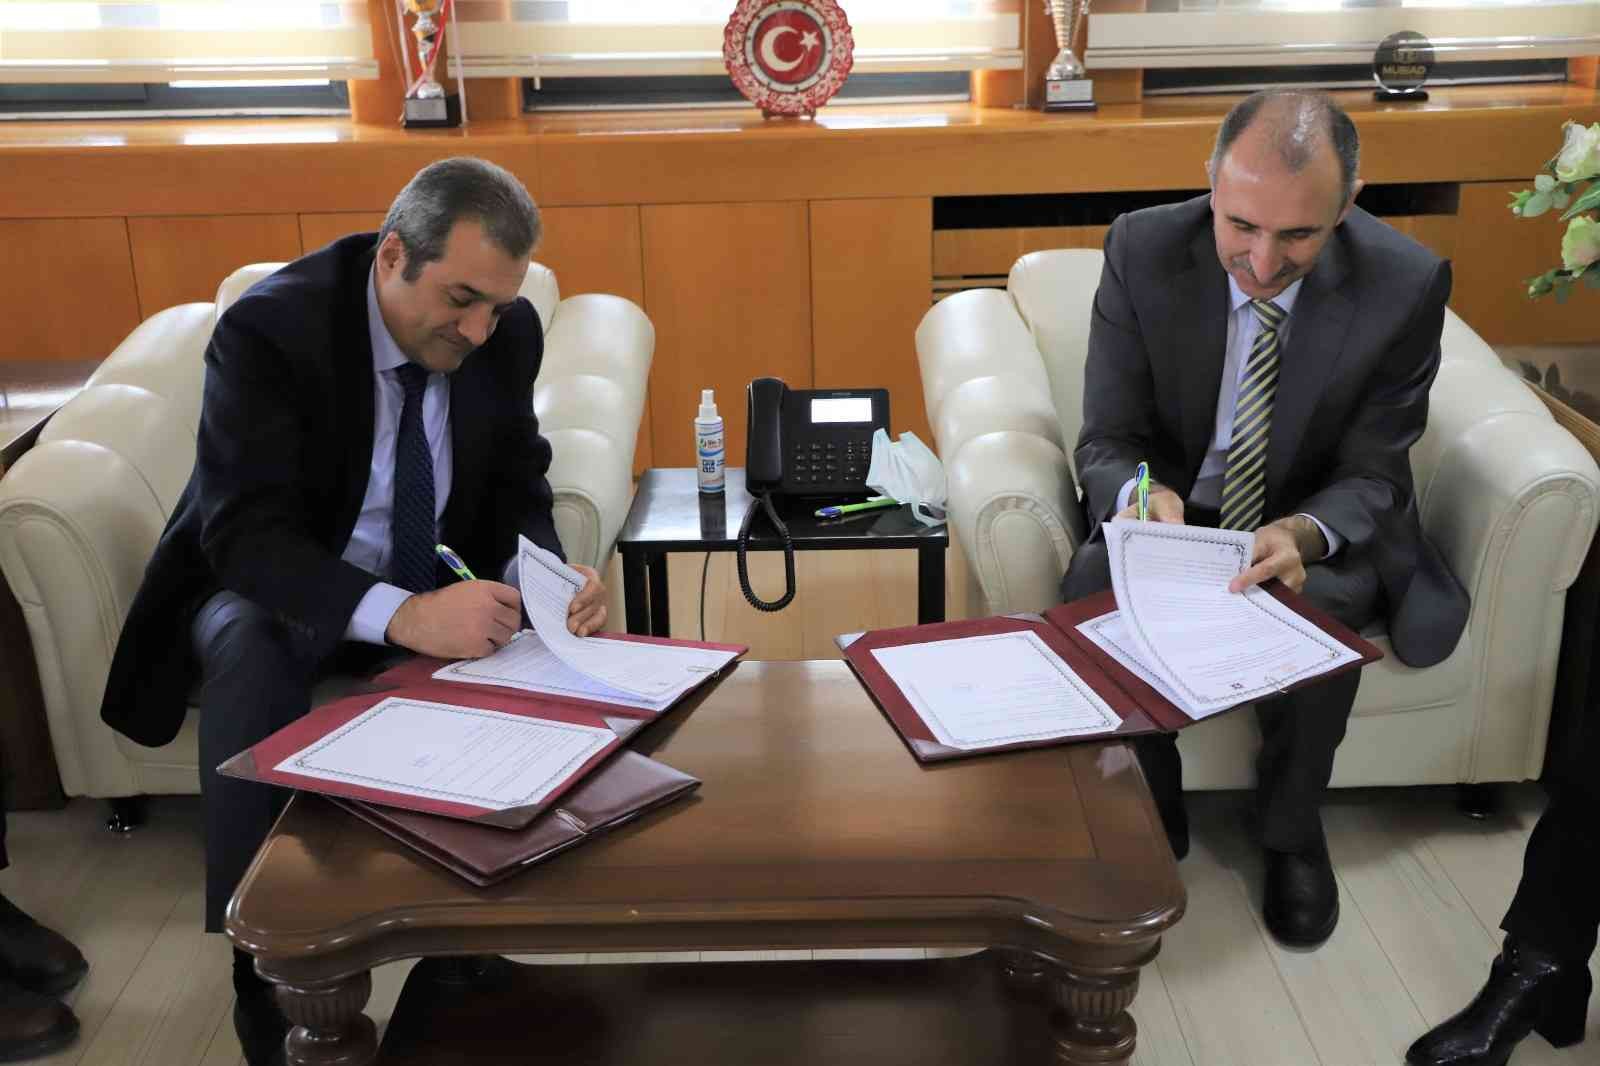 Sağlık İl Müdürlüğü ile Fırat Üniversitesi arasında iş birliği protokolü imzalandı #elazig